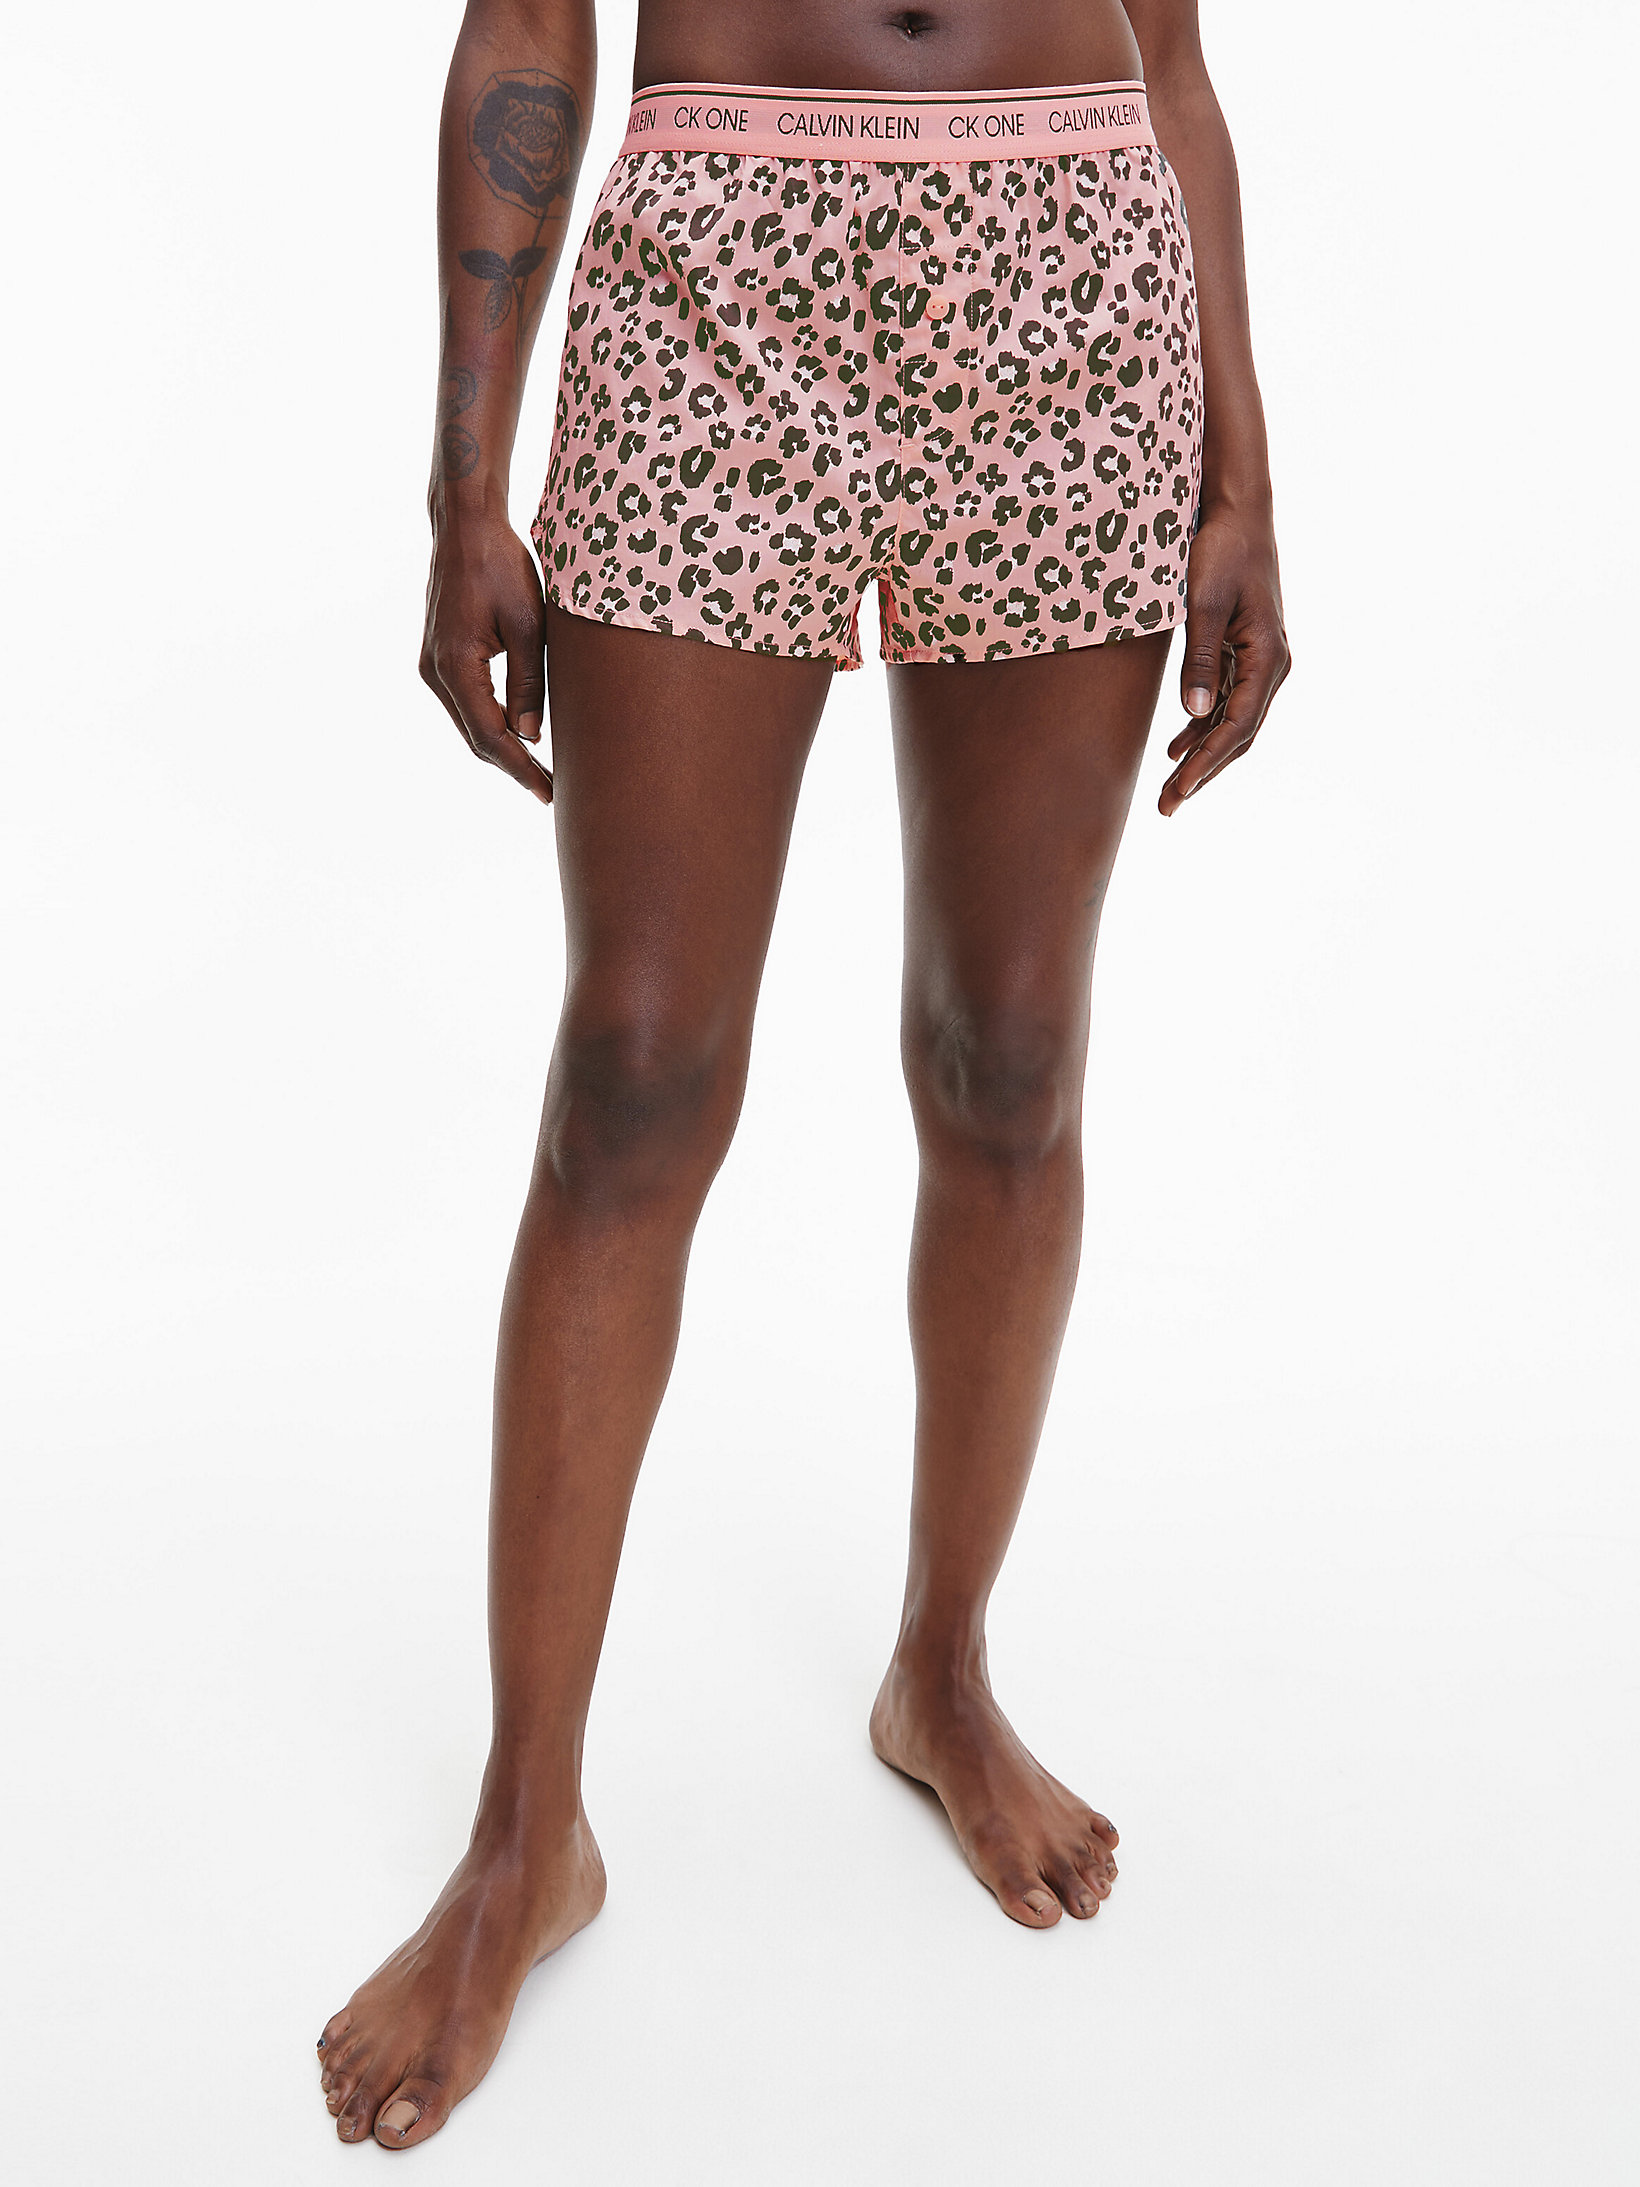 Stephen Leopard Print_peach Melba > Пижамные шорты - CK One > undefined Женщины - Calvin Klein